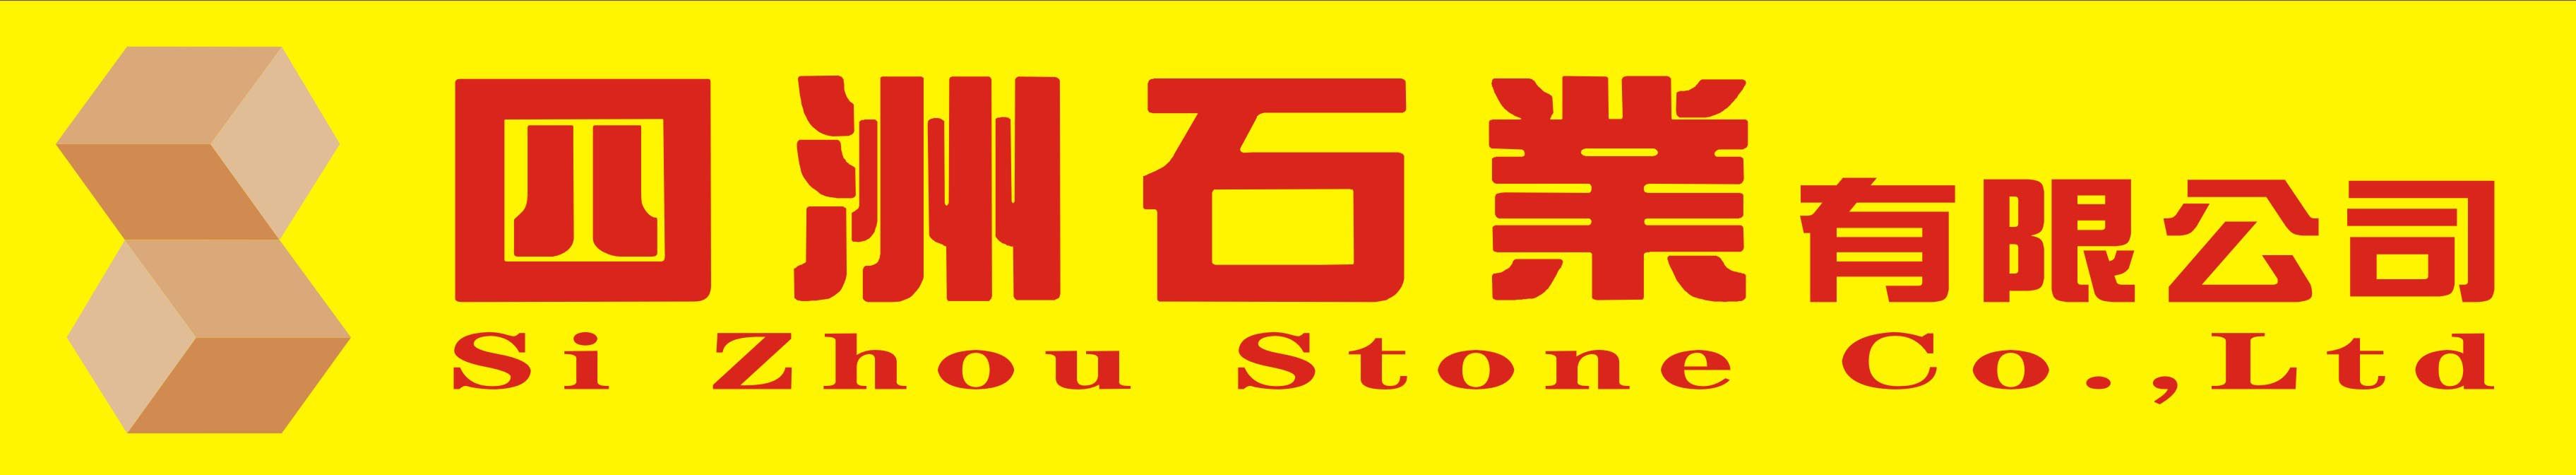 Yunfu Sizhou Stone